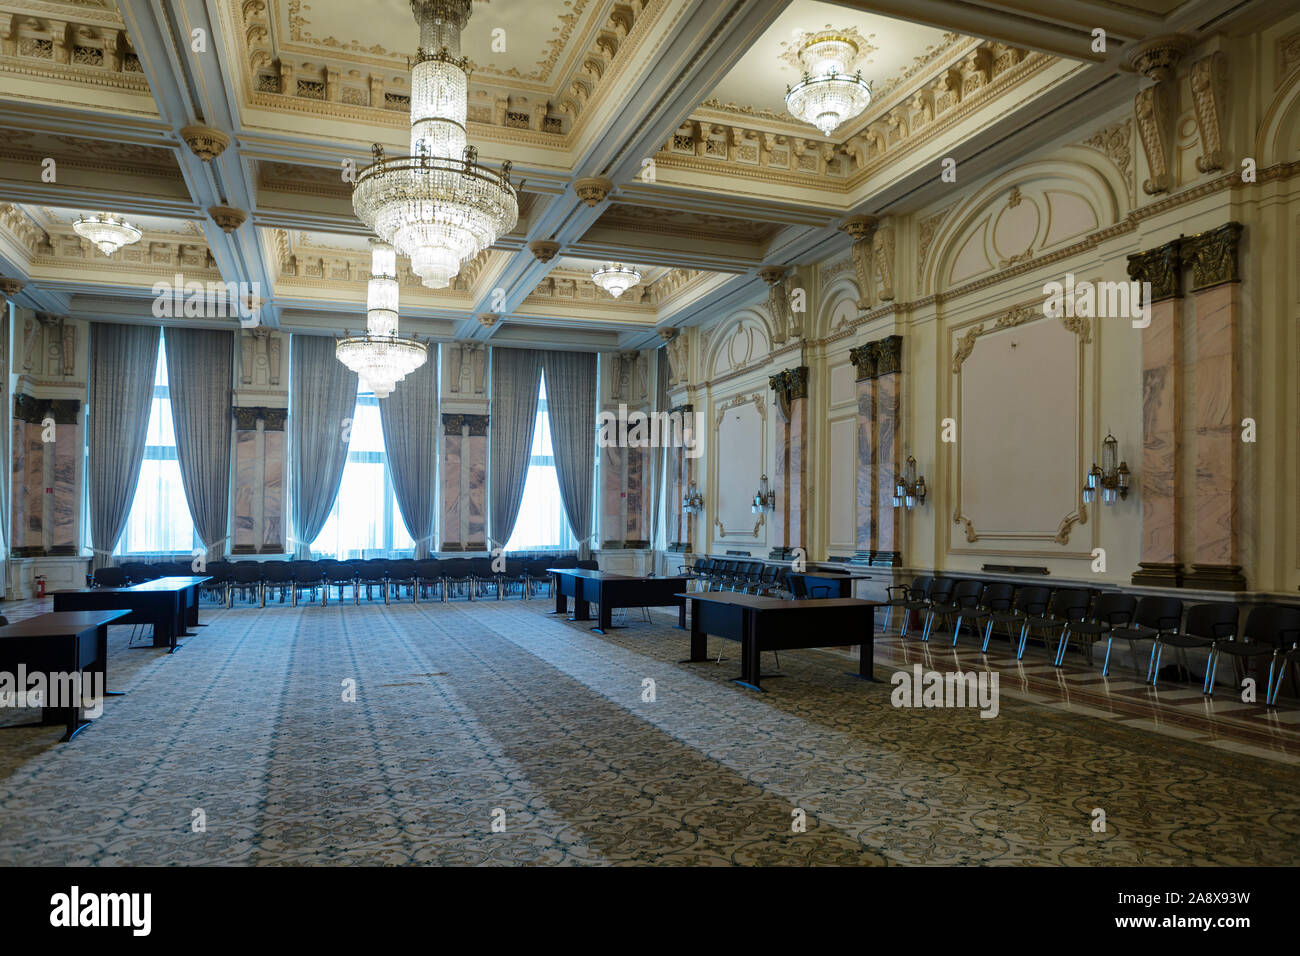 Nicolae Balescu hall inside the Palatul Parlamentului (Palace of Parliament) in Bucharest, Romania Stock Photo